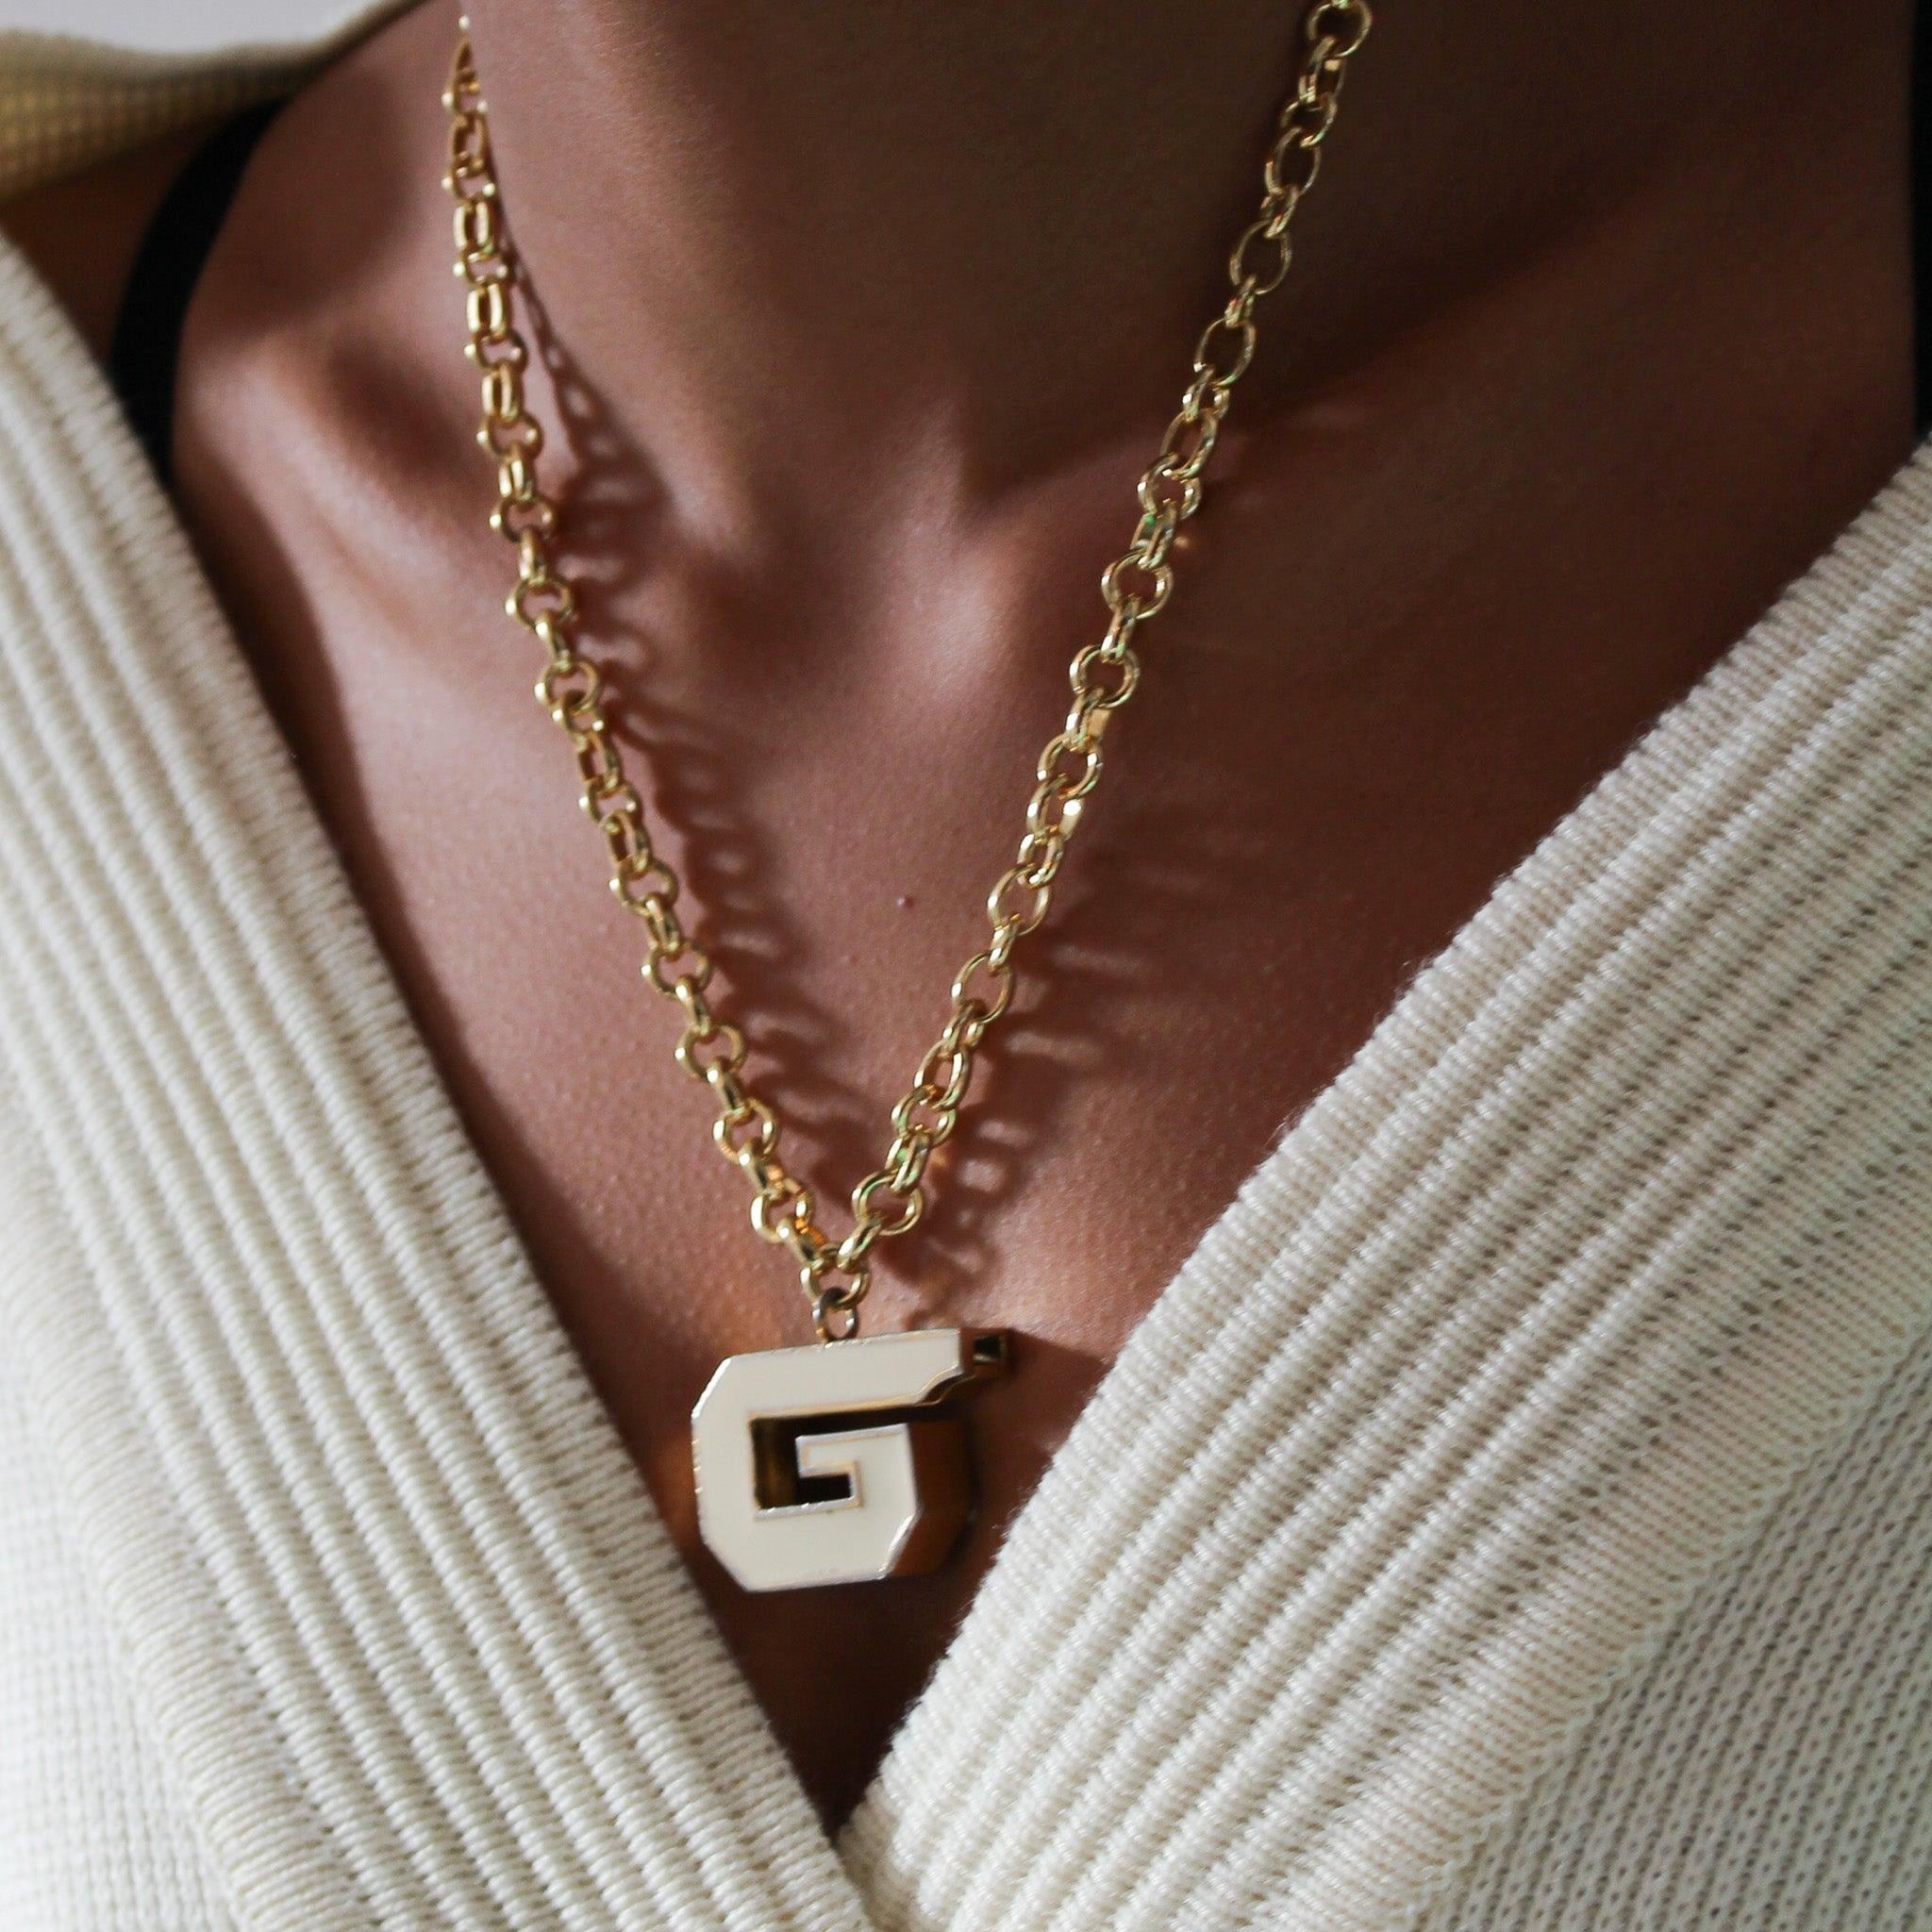 Collier porte-clé Givenchy vintage réaménagé avec sifflet 1970

Ce pendentif en forme de sifflet Givenchy des années 1970 est un nouvel ajout à notre gamme de bijoux vintage réaménagée. 

Le sifflet Givenchy de 1979 est un sifflet de travail et une